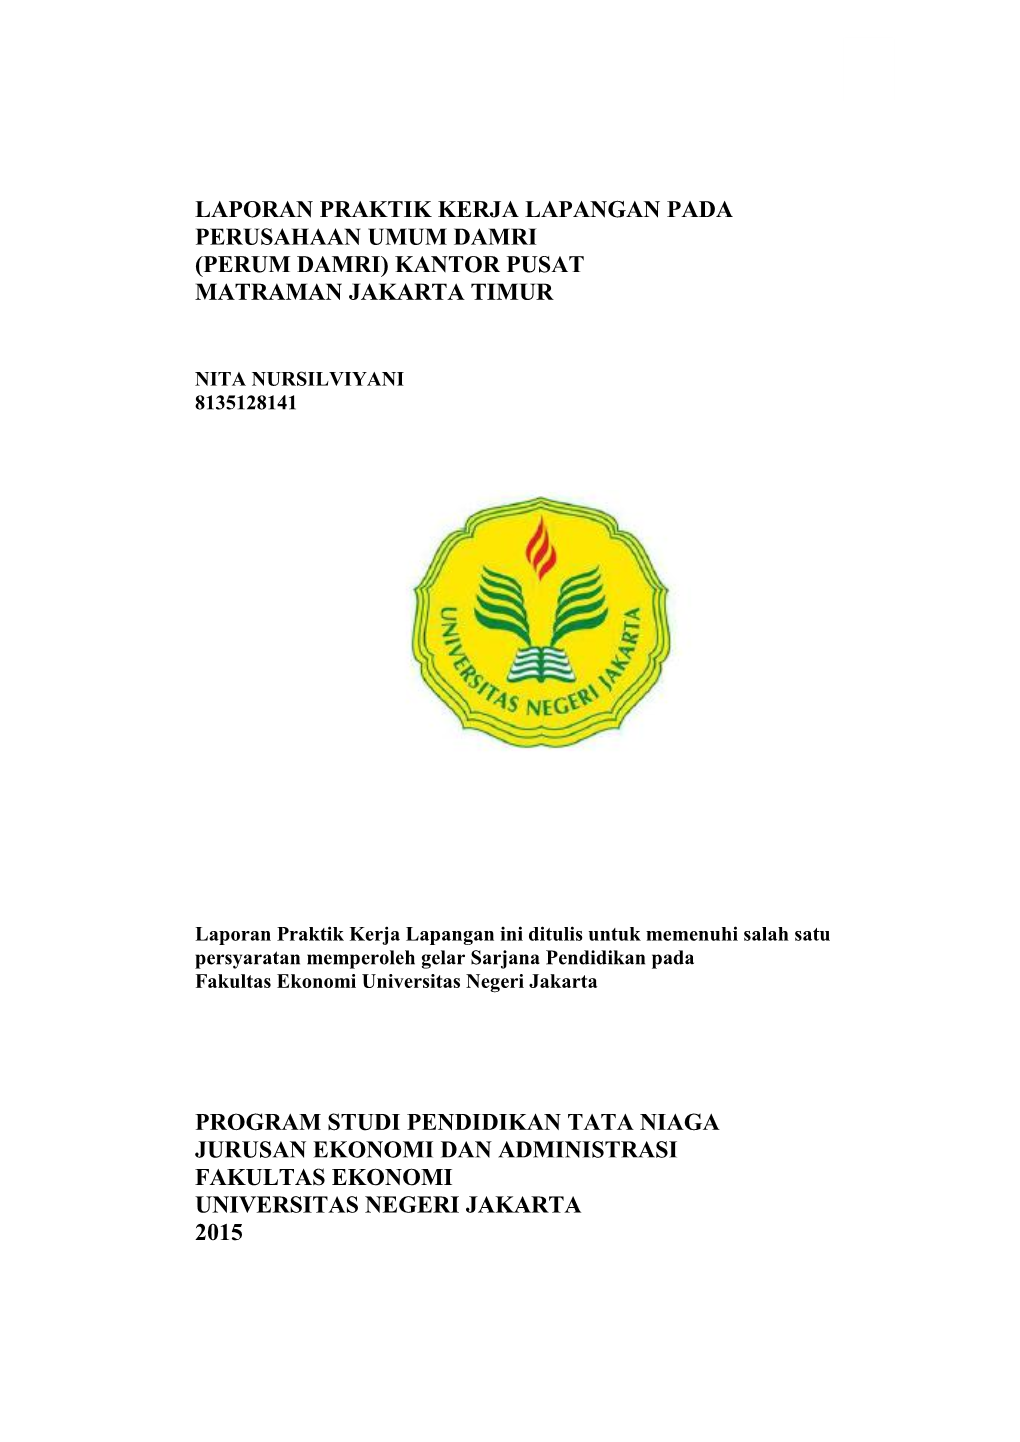 Laporan Praktik Kerja Lapangan Pada Perusahaan Umum Damri (Perum Damri) Kantor Pusat Matraman Jakarta Timur